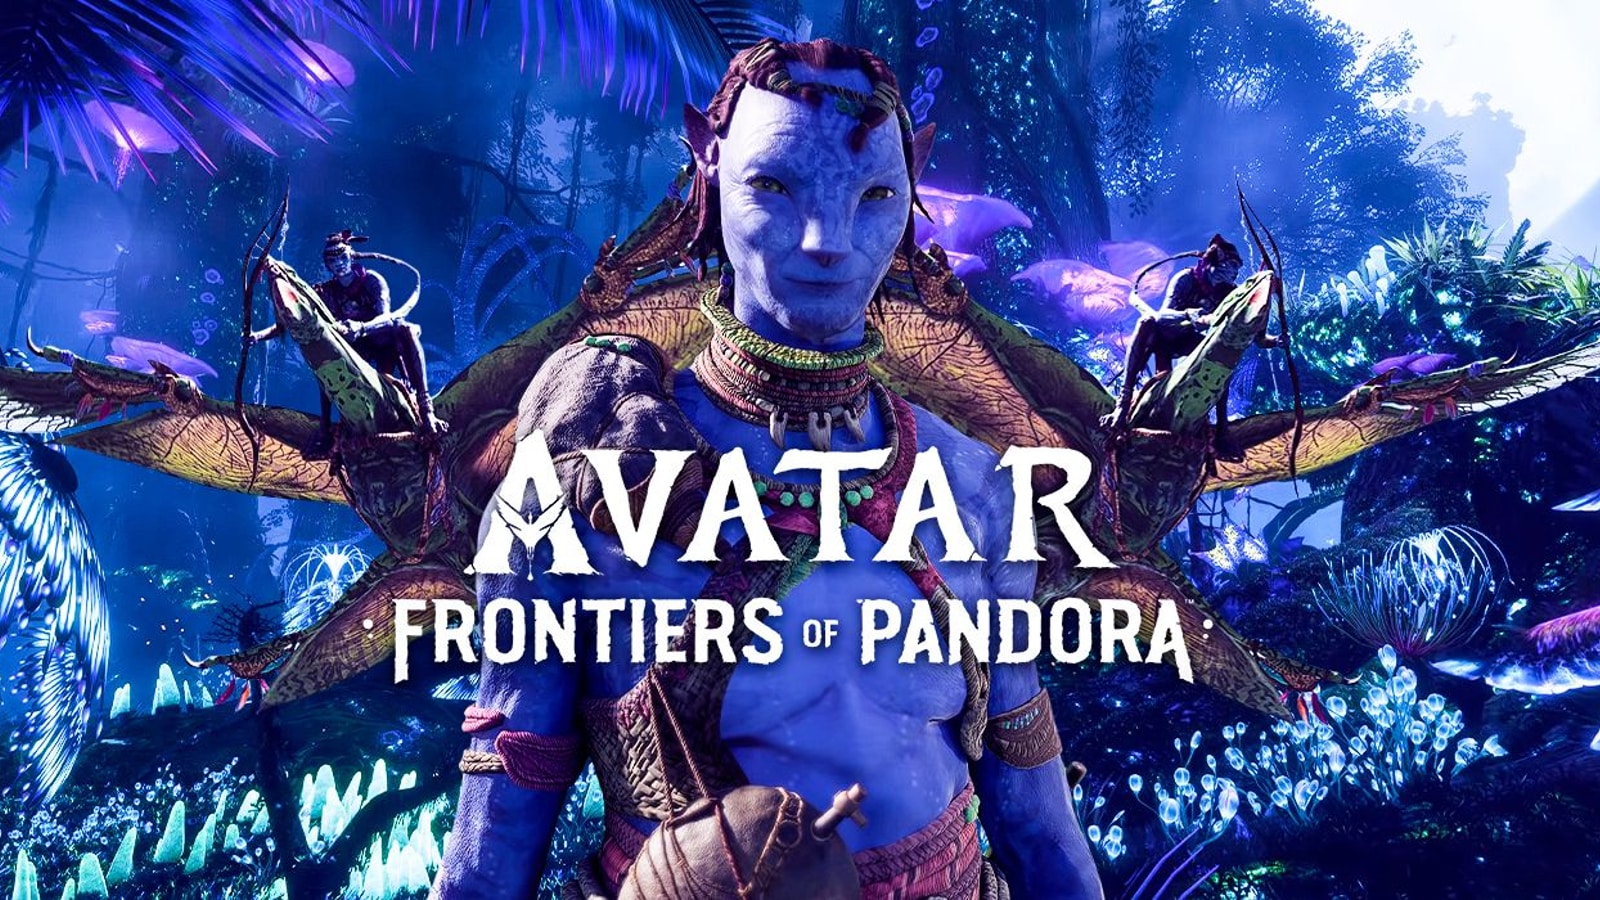 Game Avatar: Frontiers of Pandora năm 2024 sẽ mang đến cho người chơi trải nghiệm game hấp dẫn đúng với sự kỳ vĩ của thế giới Pandora. Hơn 10 năm sau khi bộ phim ra mắt, game sẽ cho phép người chơi khám phá thênh thang hoang sơ, đối đầu với thực thể mới và tạo ra những kỷ niệm đáng nhớ. Hãy xem hình ảnh liên quan để cảm nhận trước sức nóng của Avatar: Frontiers of Pandora!